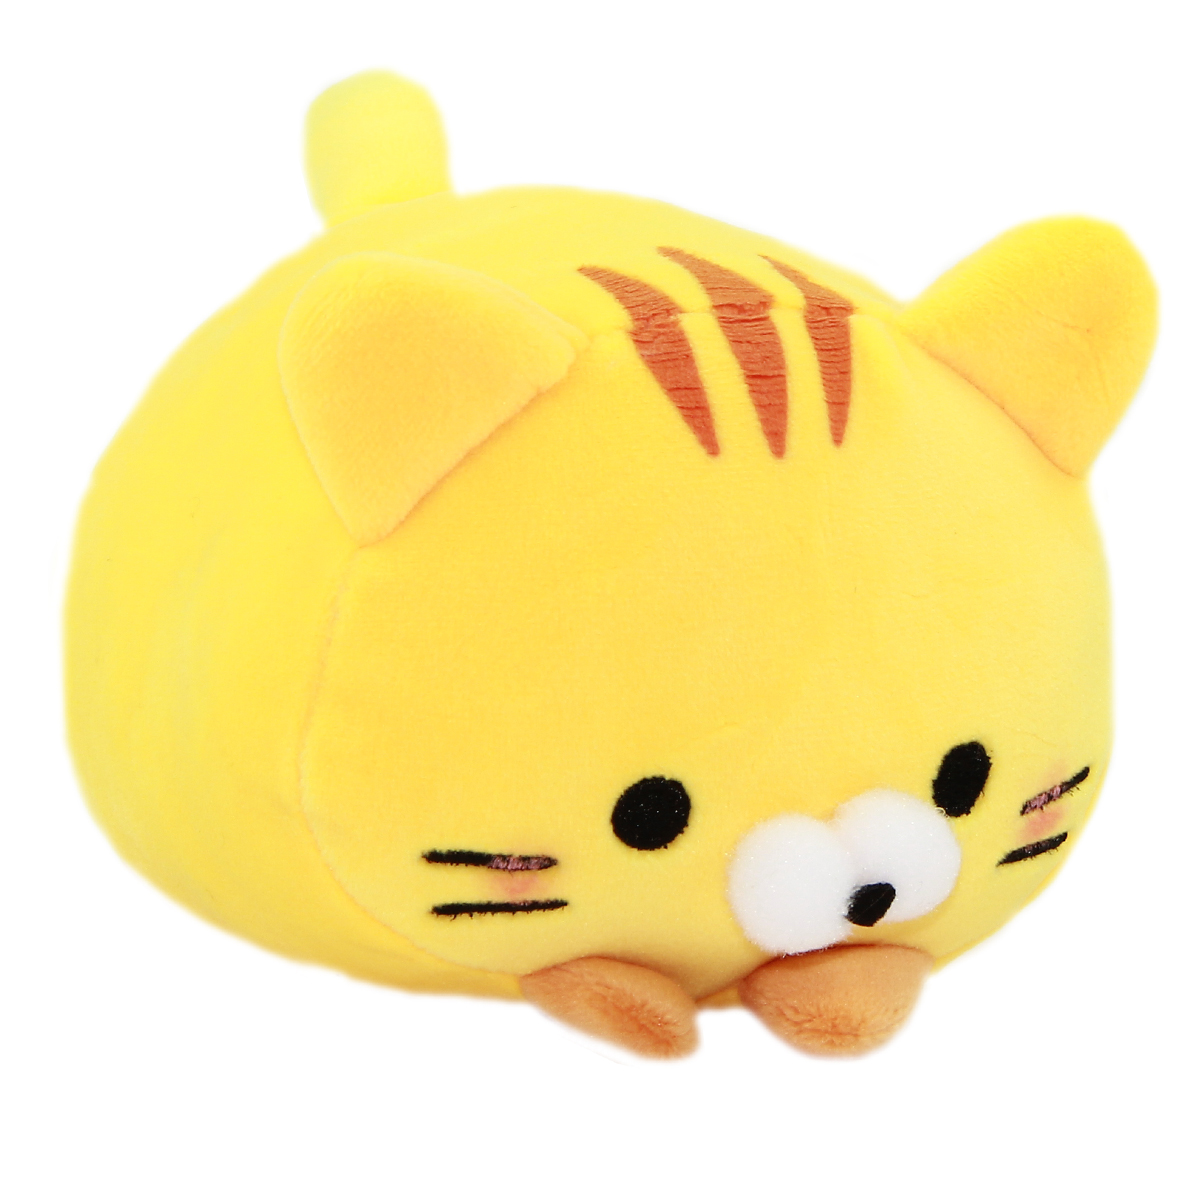 Plush Cat Squishy Toy Super Soft Stuffed Animal Neko Yellow